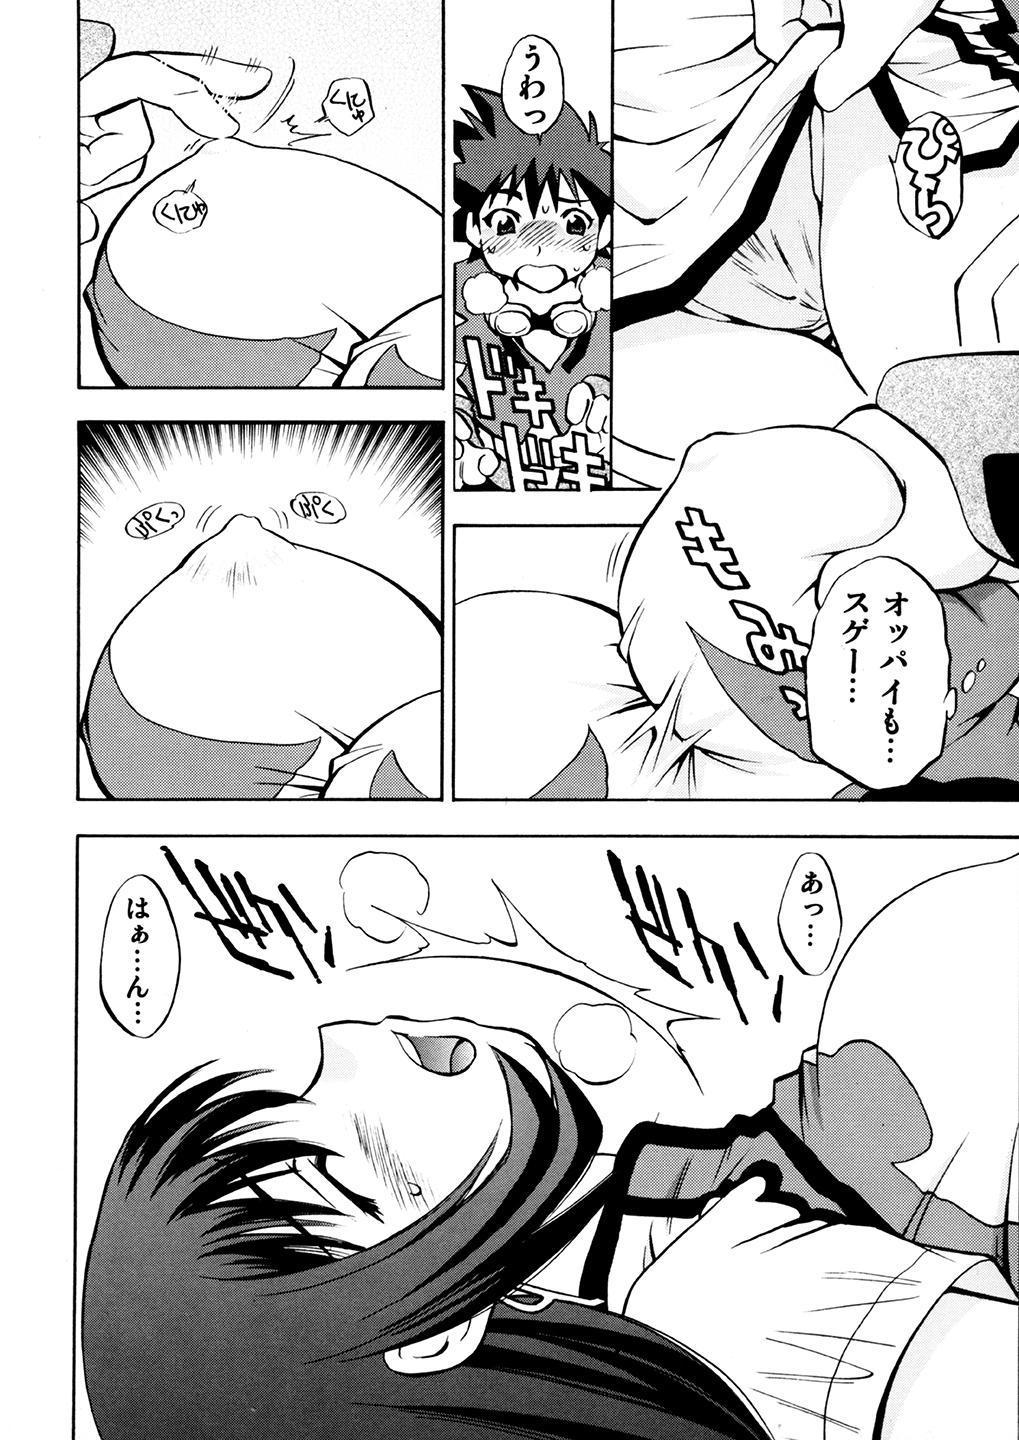 Fudendo Kotona & Rei Mii - Zoids genesis Ink - Page 5